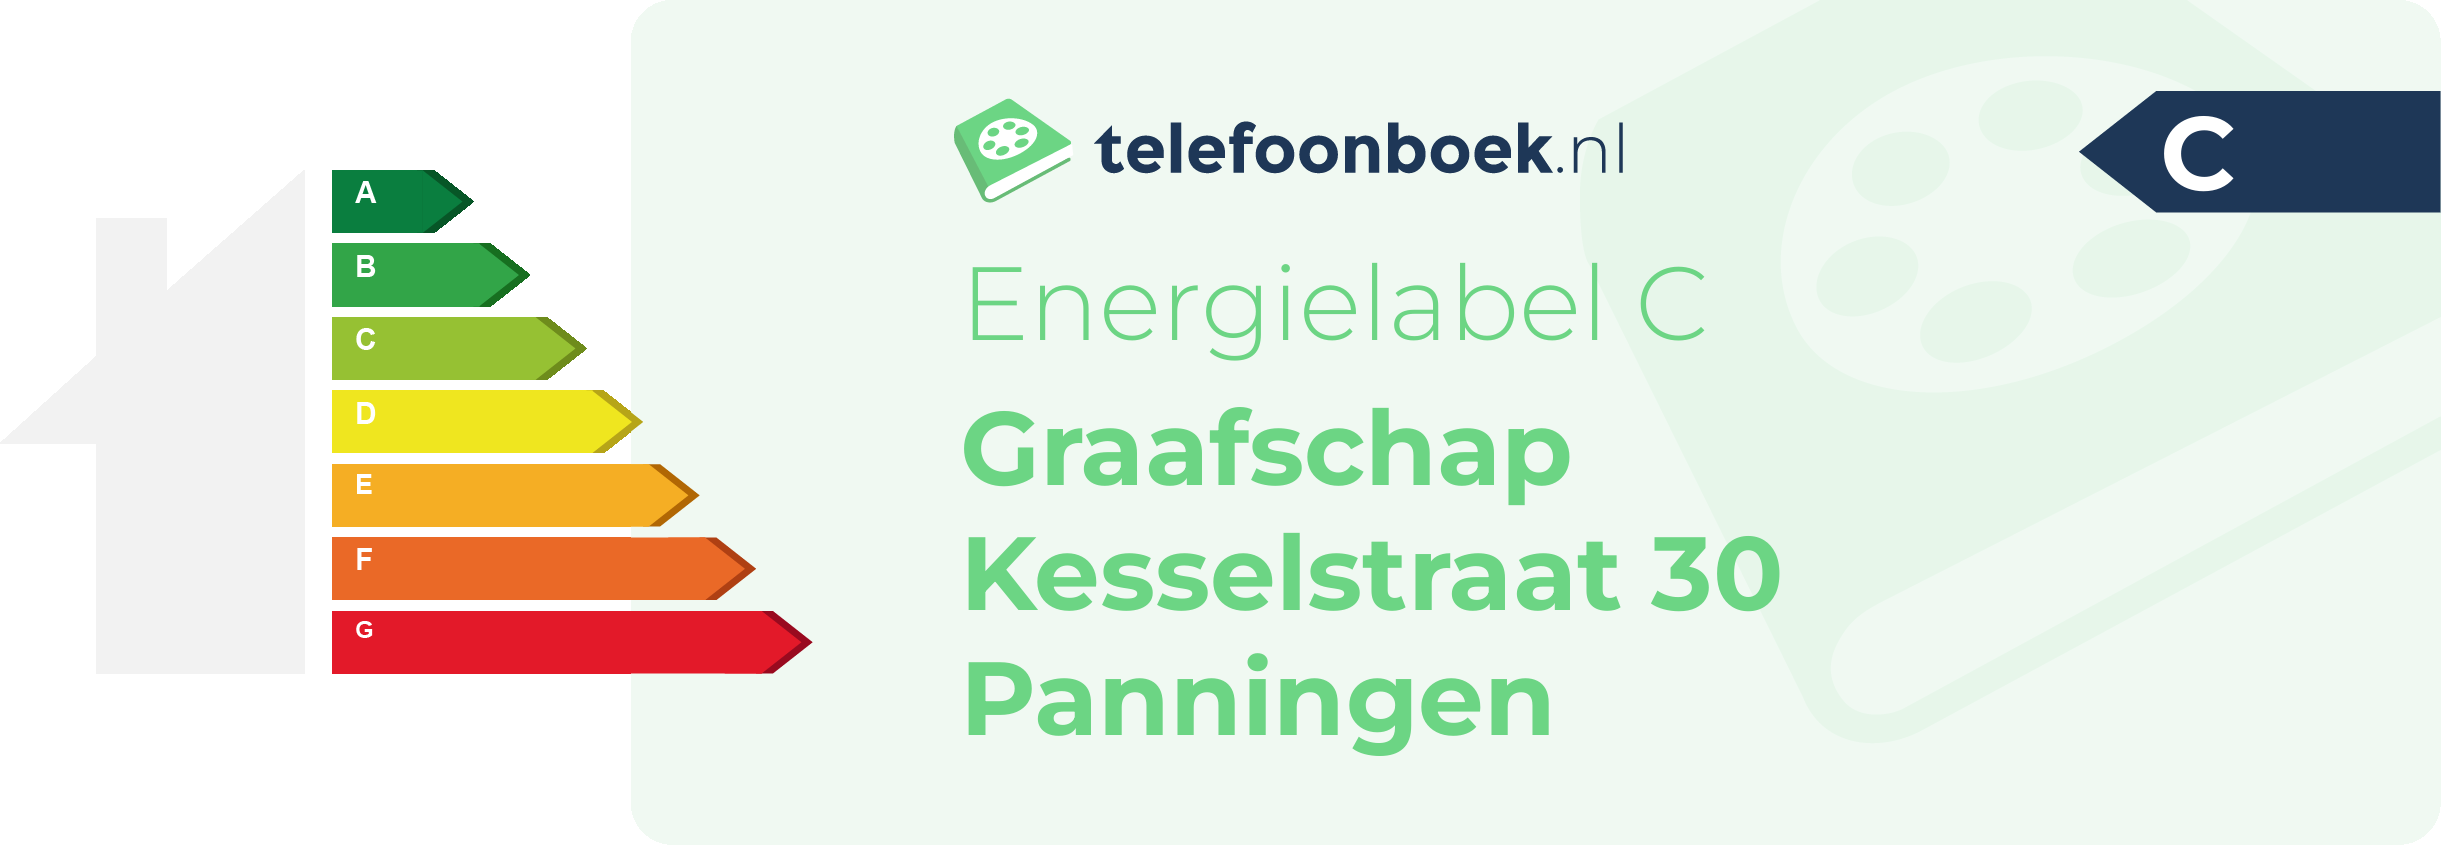 Energielabel Graafschap Kesselstraat 30 Panningen